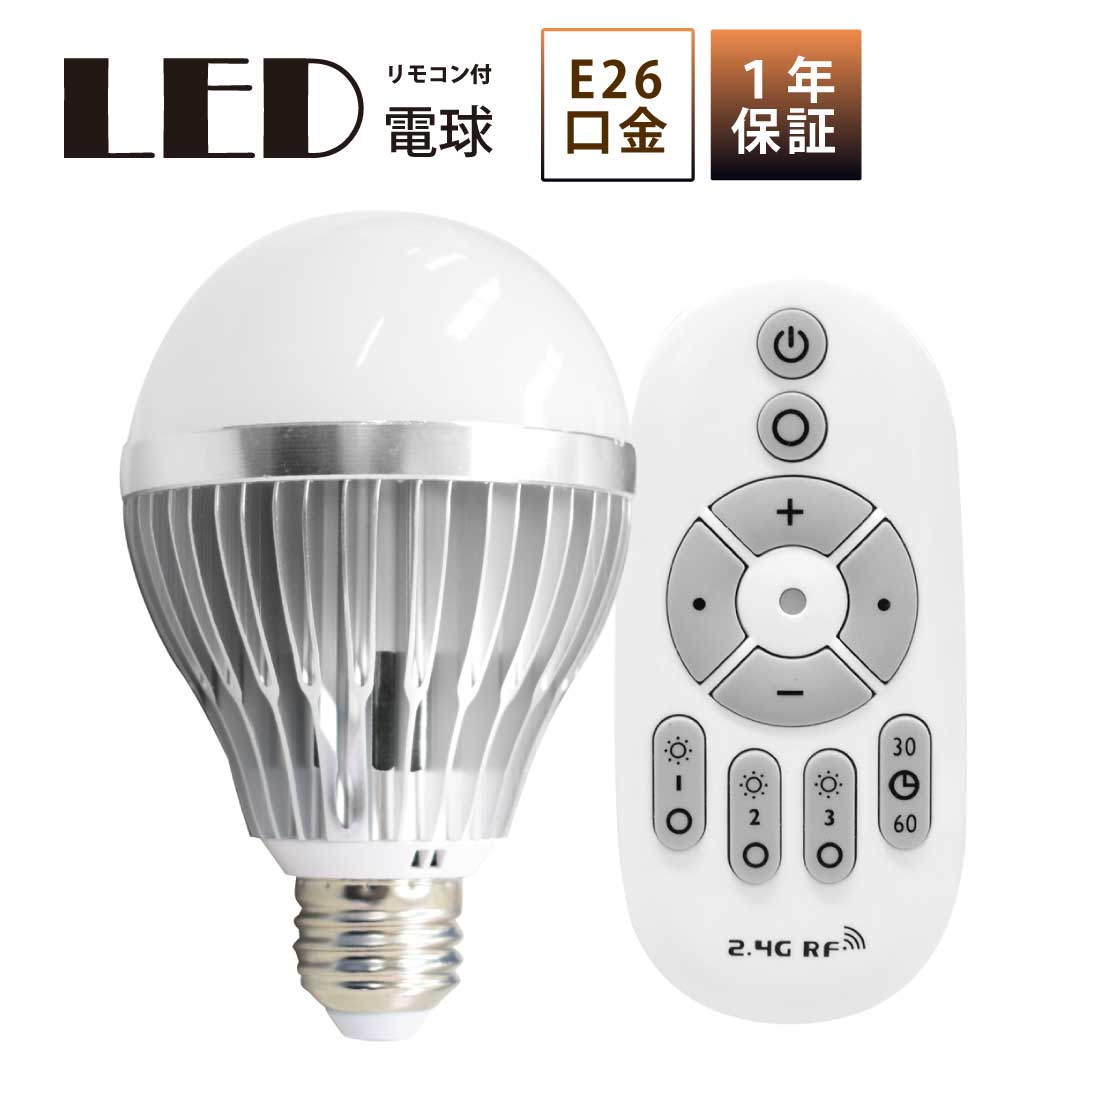 LED電球 80W形相当 E26 口金 リモコン付き 調色 調光 18W 一般電球 照明 節電 電球 電球色 昼白色 昼光色 1400lm 3000k 6500k 工事不要 簡単設置 ペンダントライト